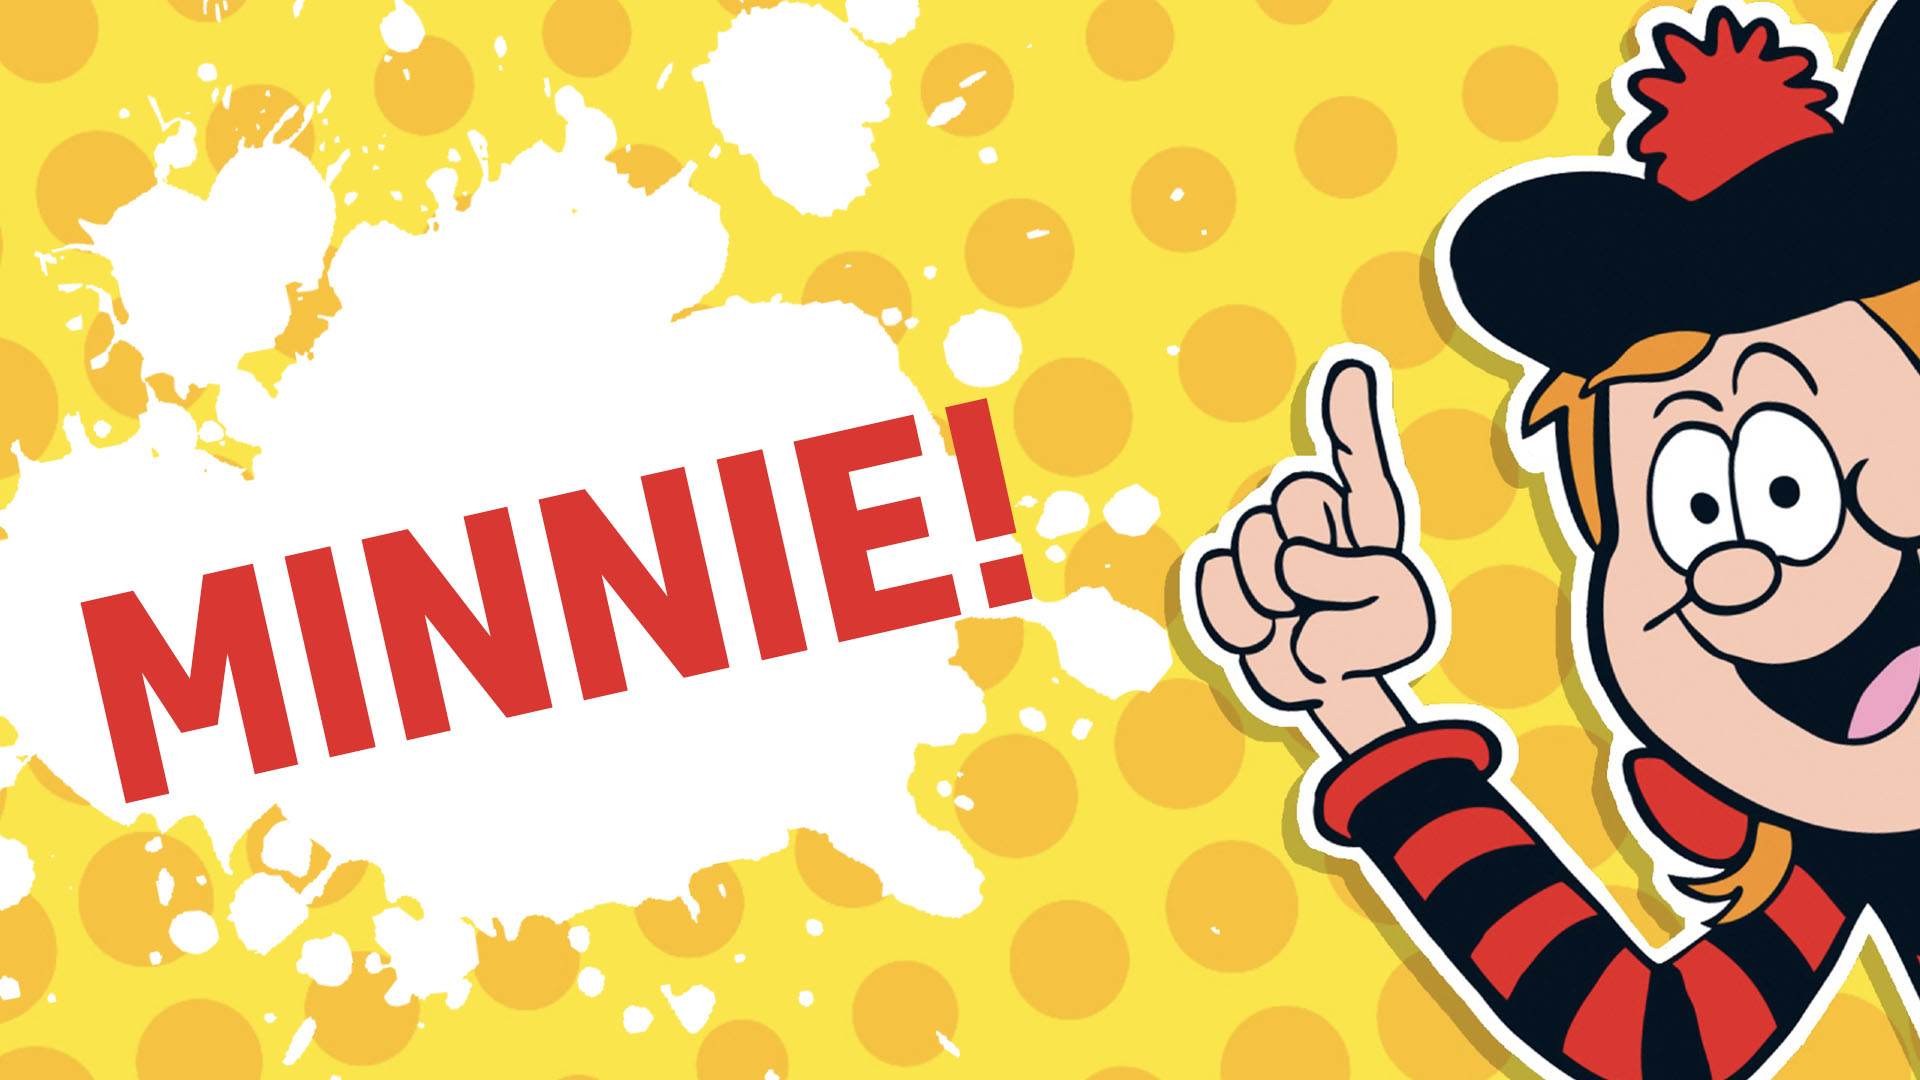 Result: Minnie the Minx